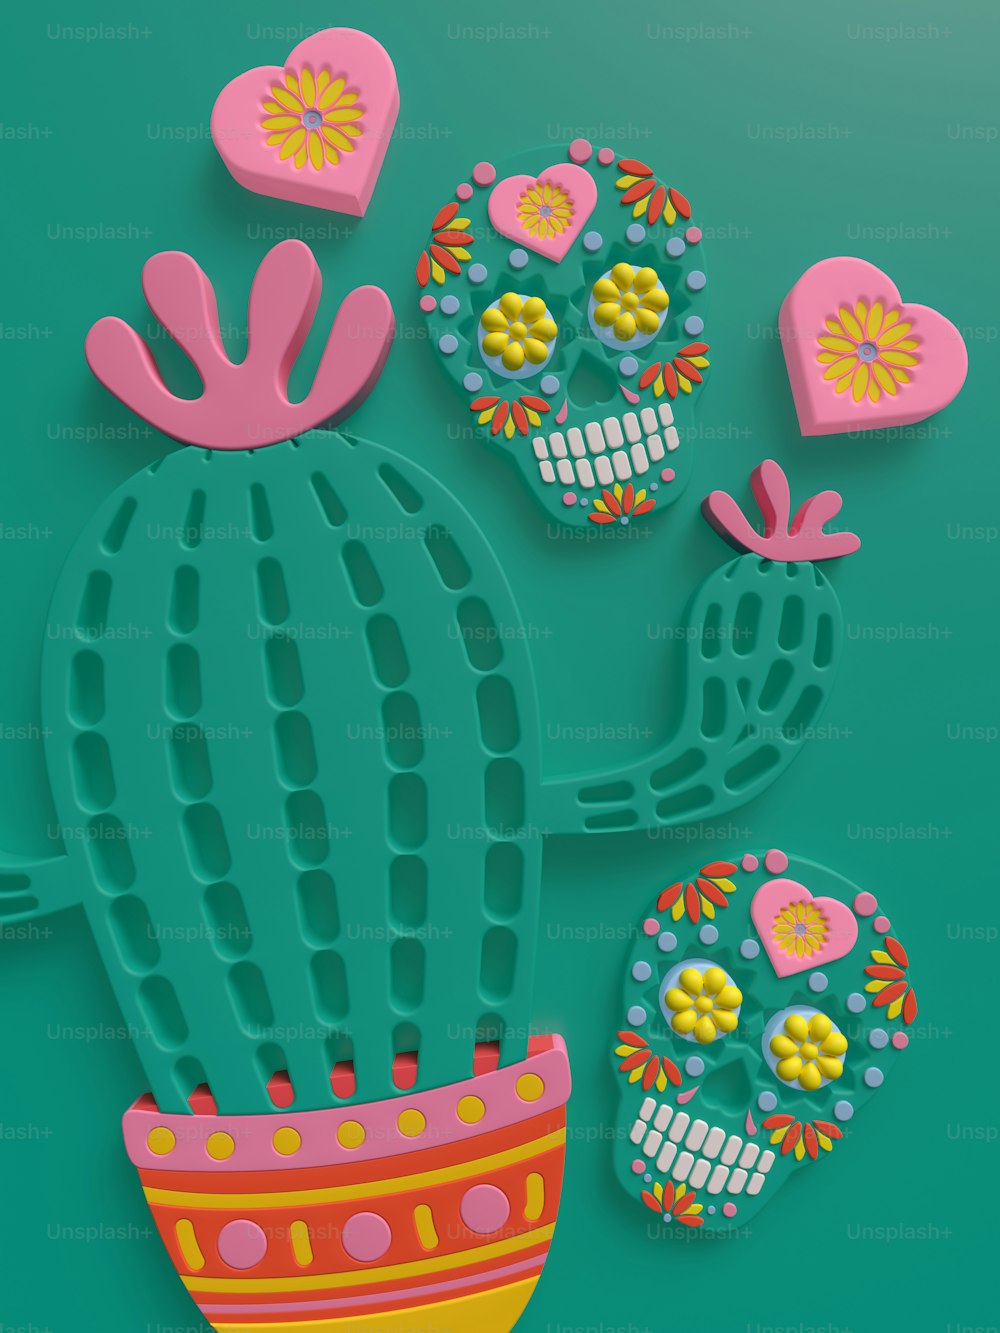 un cactus con calaveras y corazones